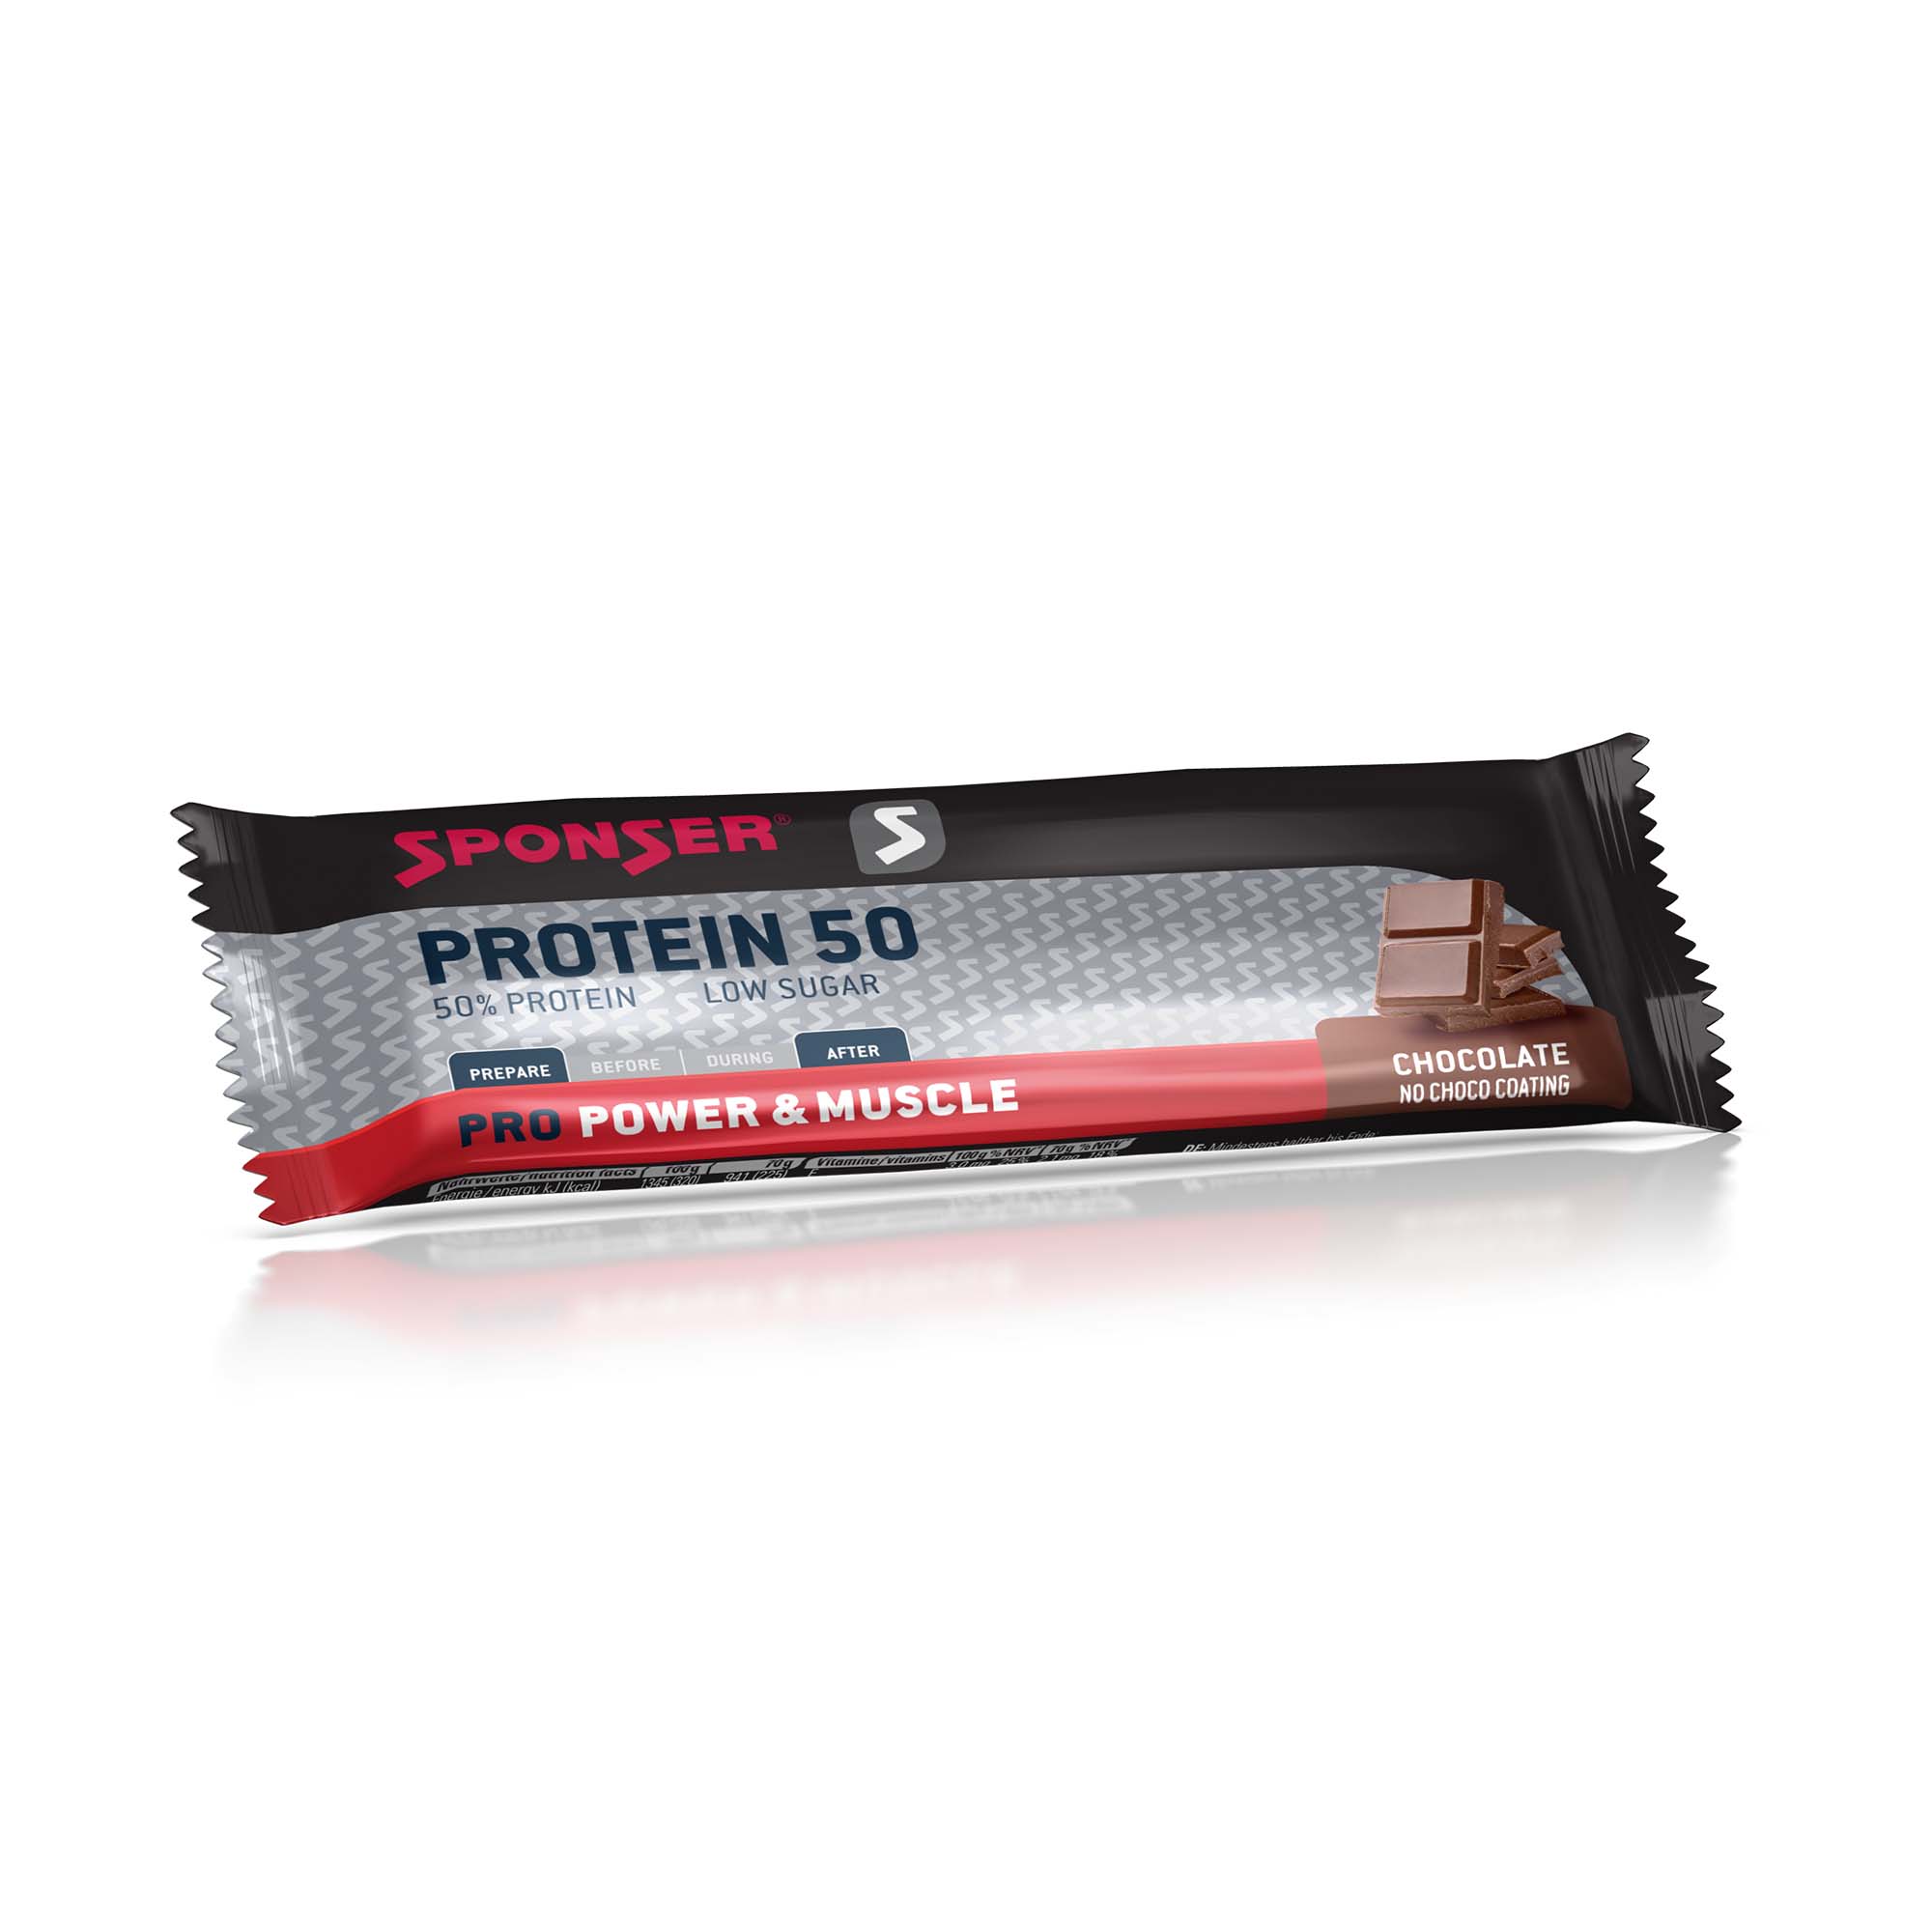 Sponser Pro Protein 50, 70 g.